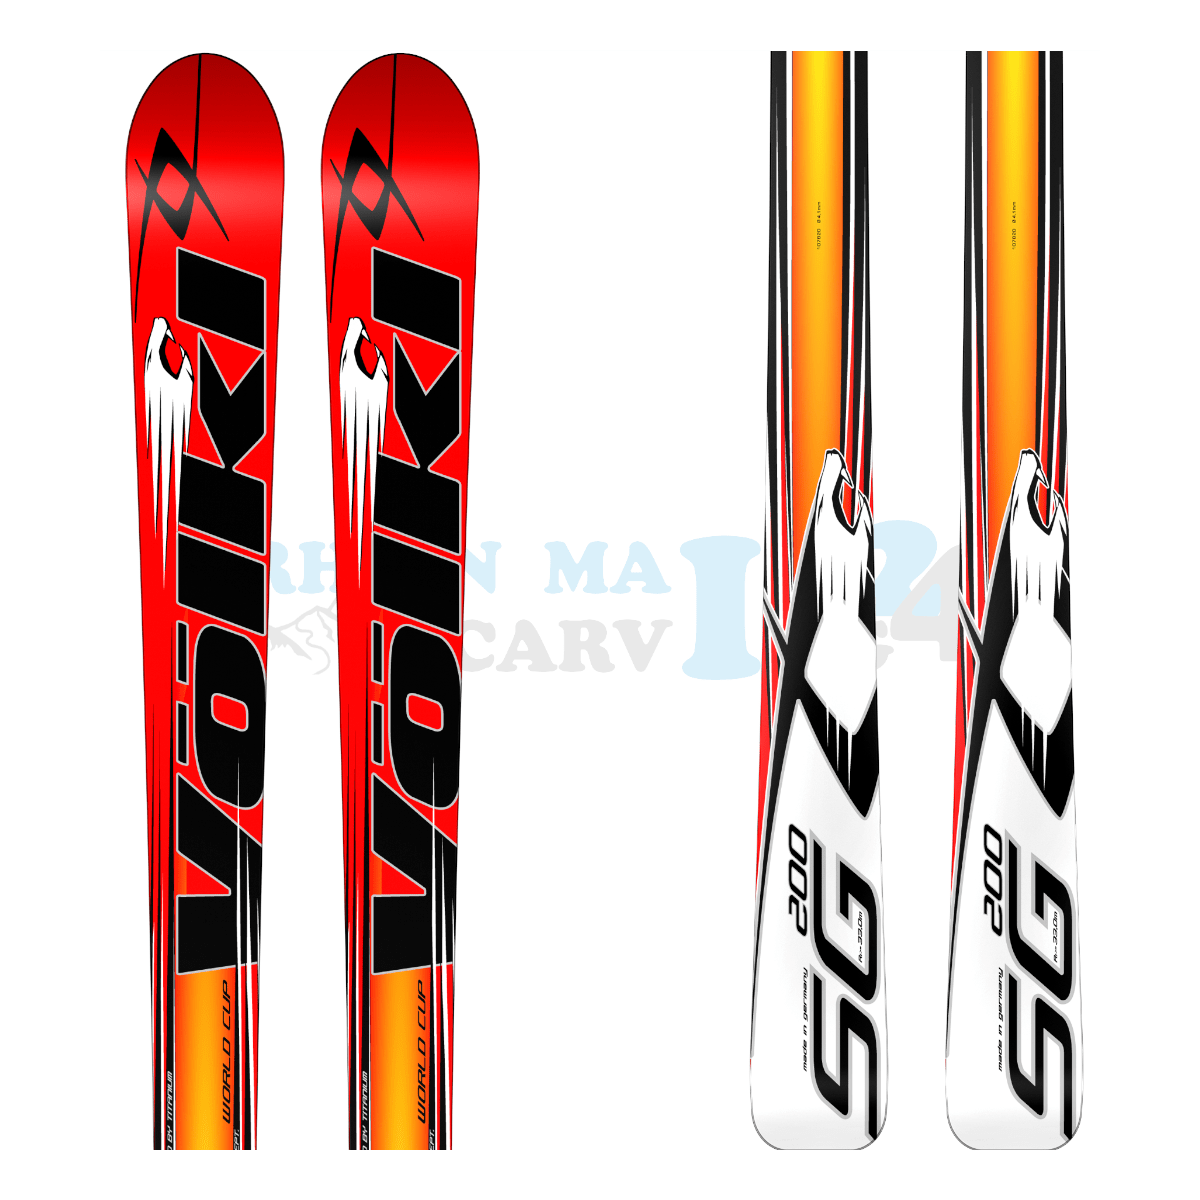 Völkl Racetiger Super-G mit dem Design eines Tigers, Ansicht des oberen sowie unteren Teils des Skis 